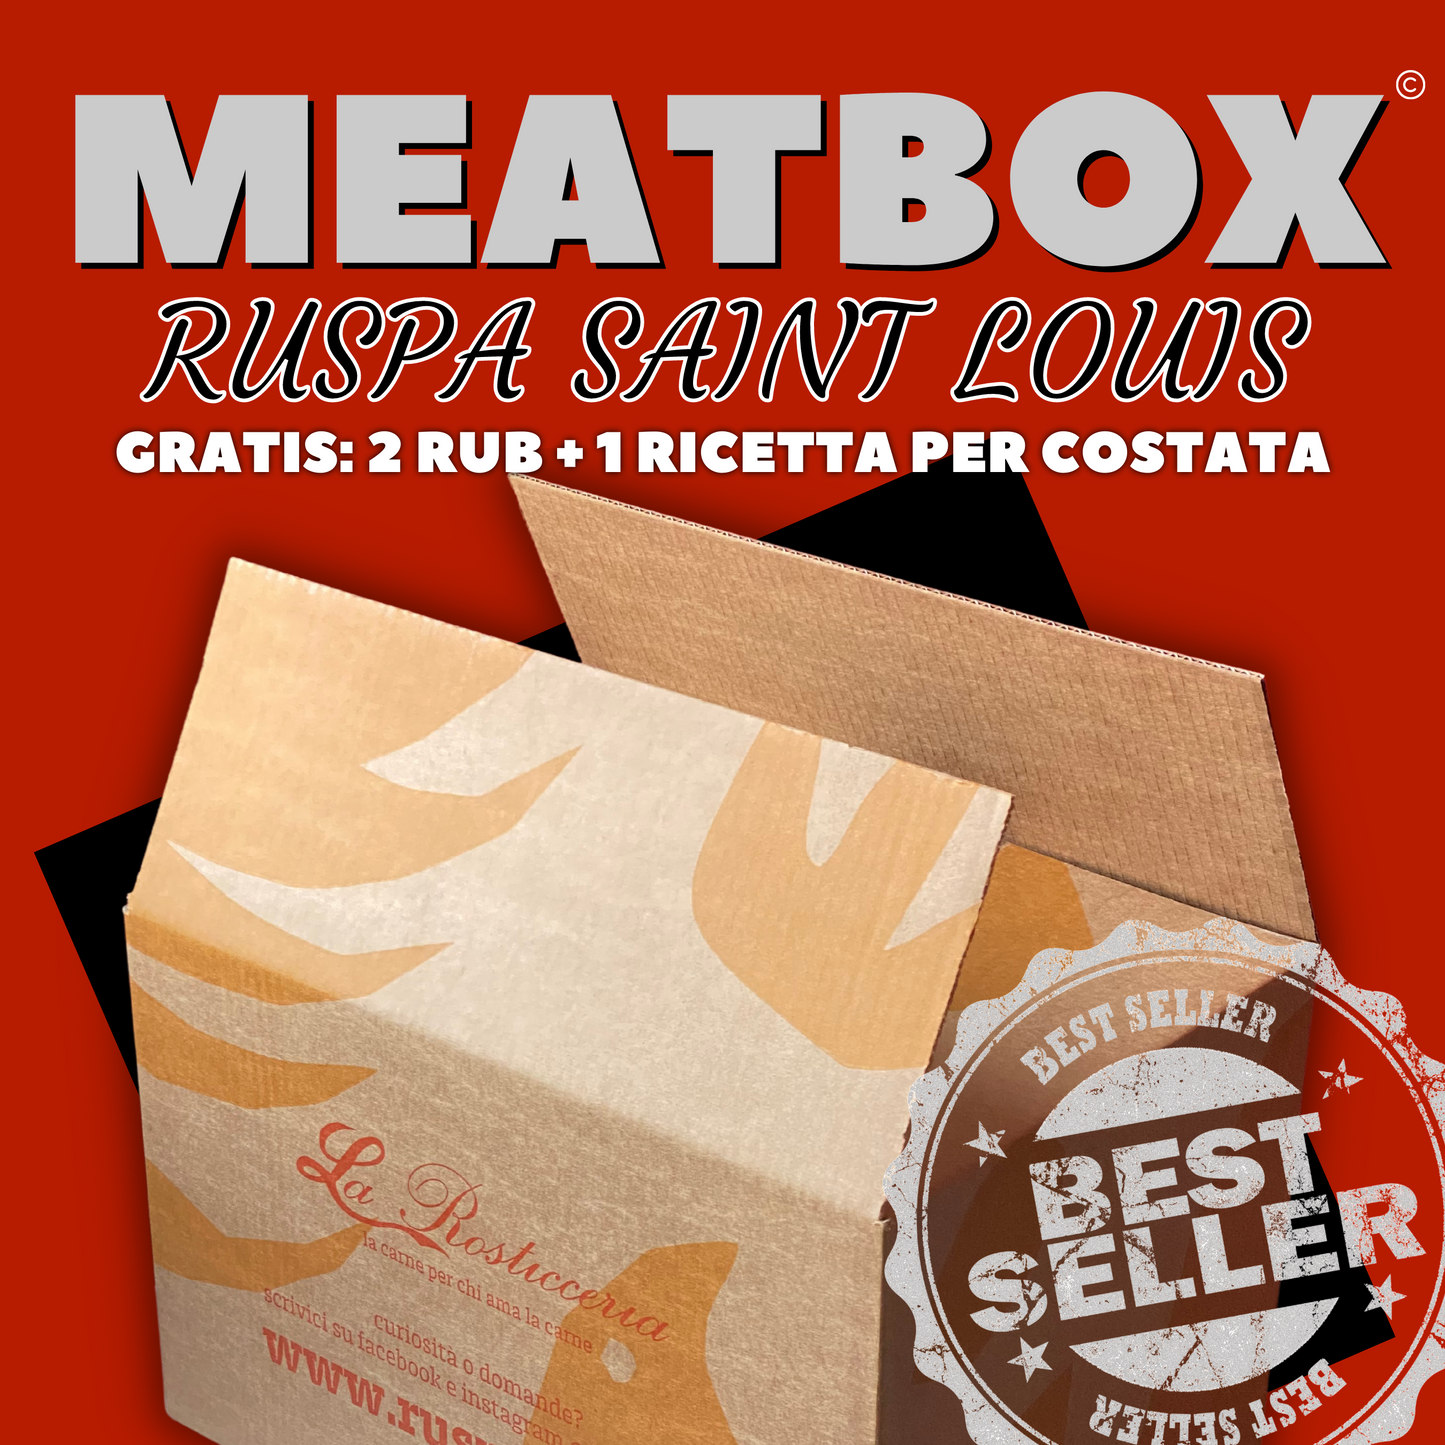 Meatbox Ruspa-Saint louis best seller